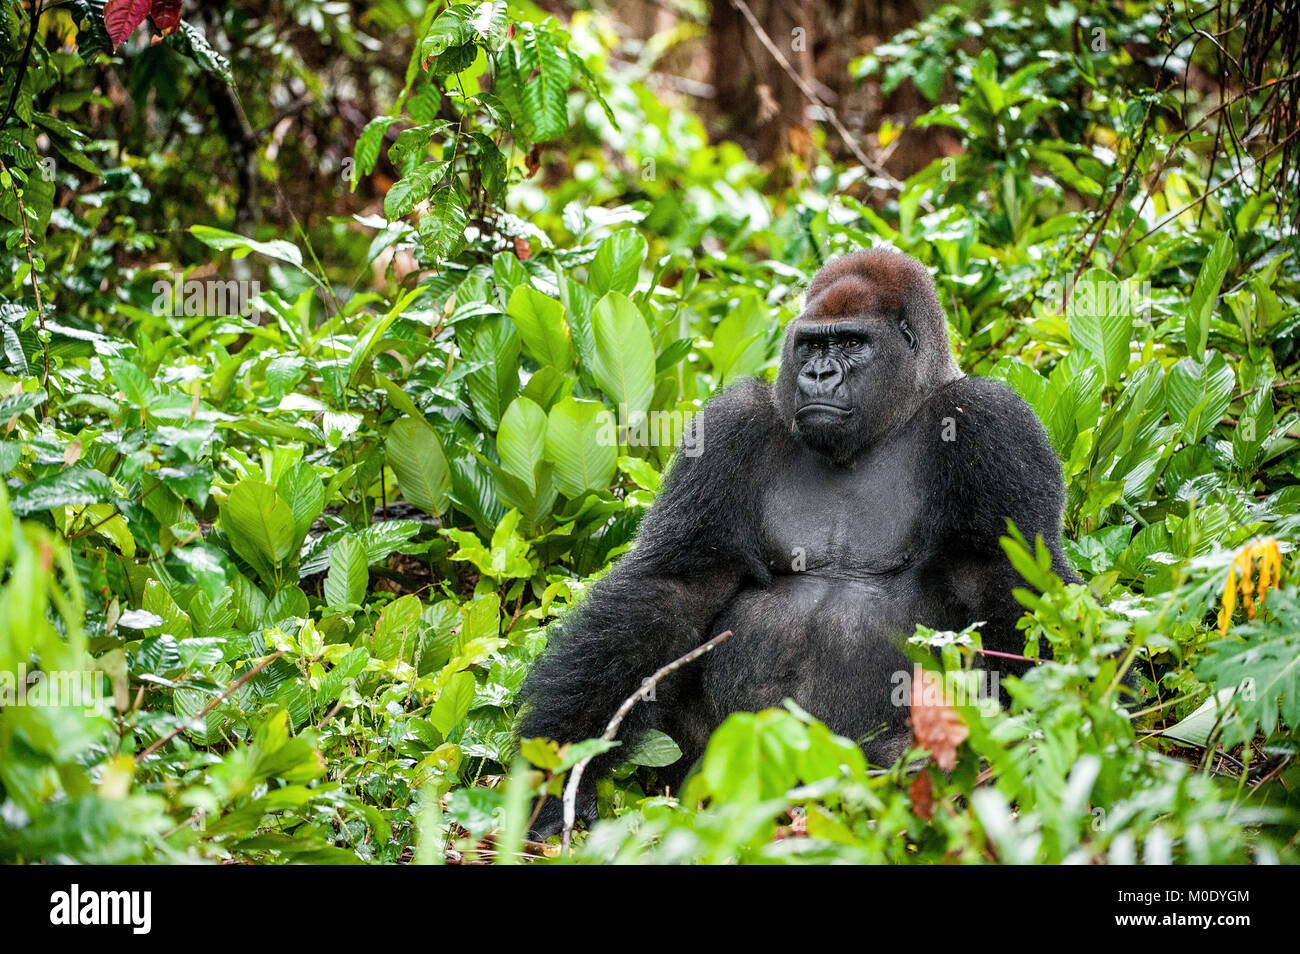 Ritratto di una pianura occidentale (gorilla Gorilla gorilla gorilla) chiudere fino a breve distanza. Silverback - maschio adulto di un gorilla in un habitat naturale Foto Stock